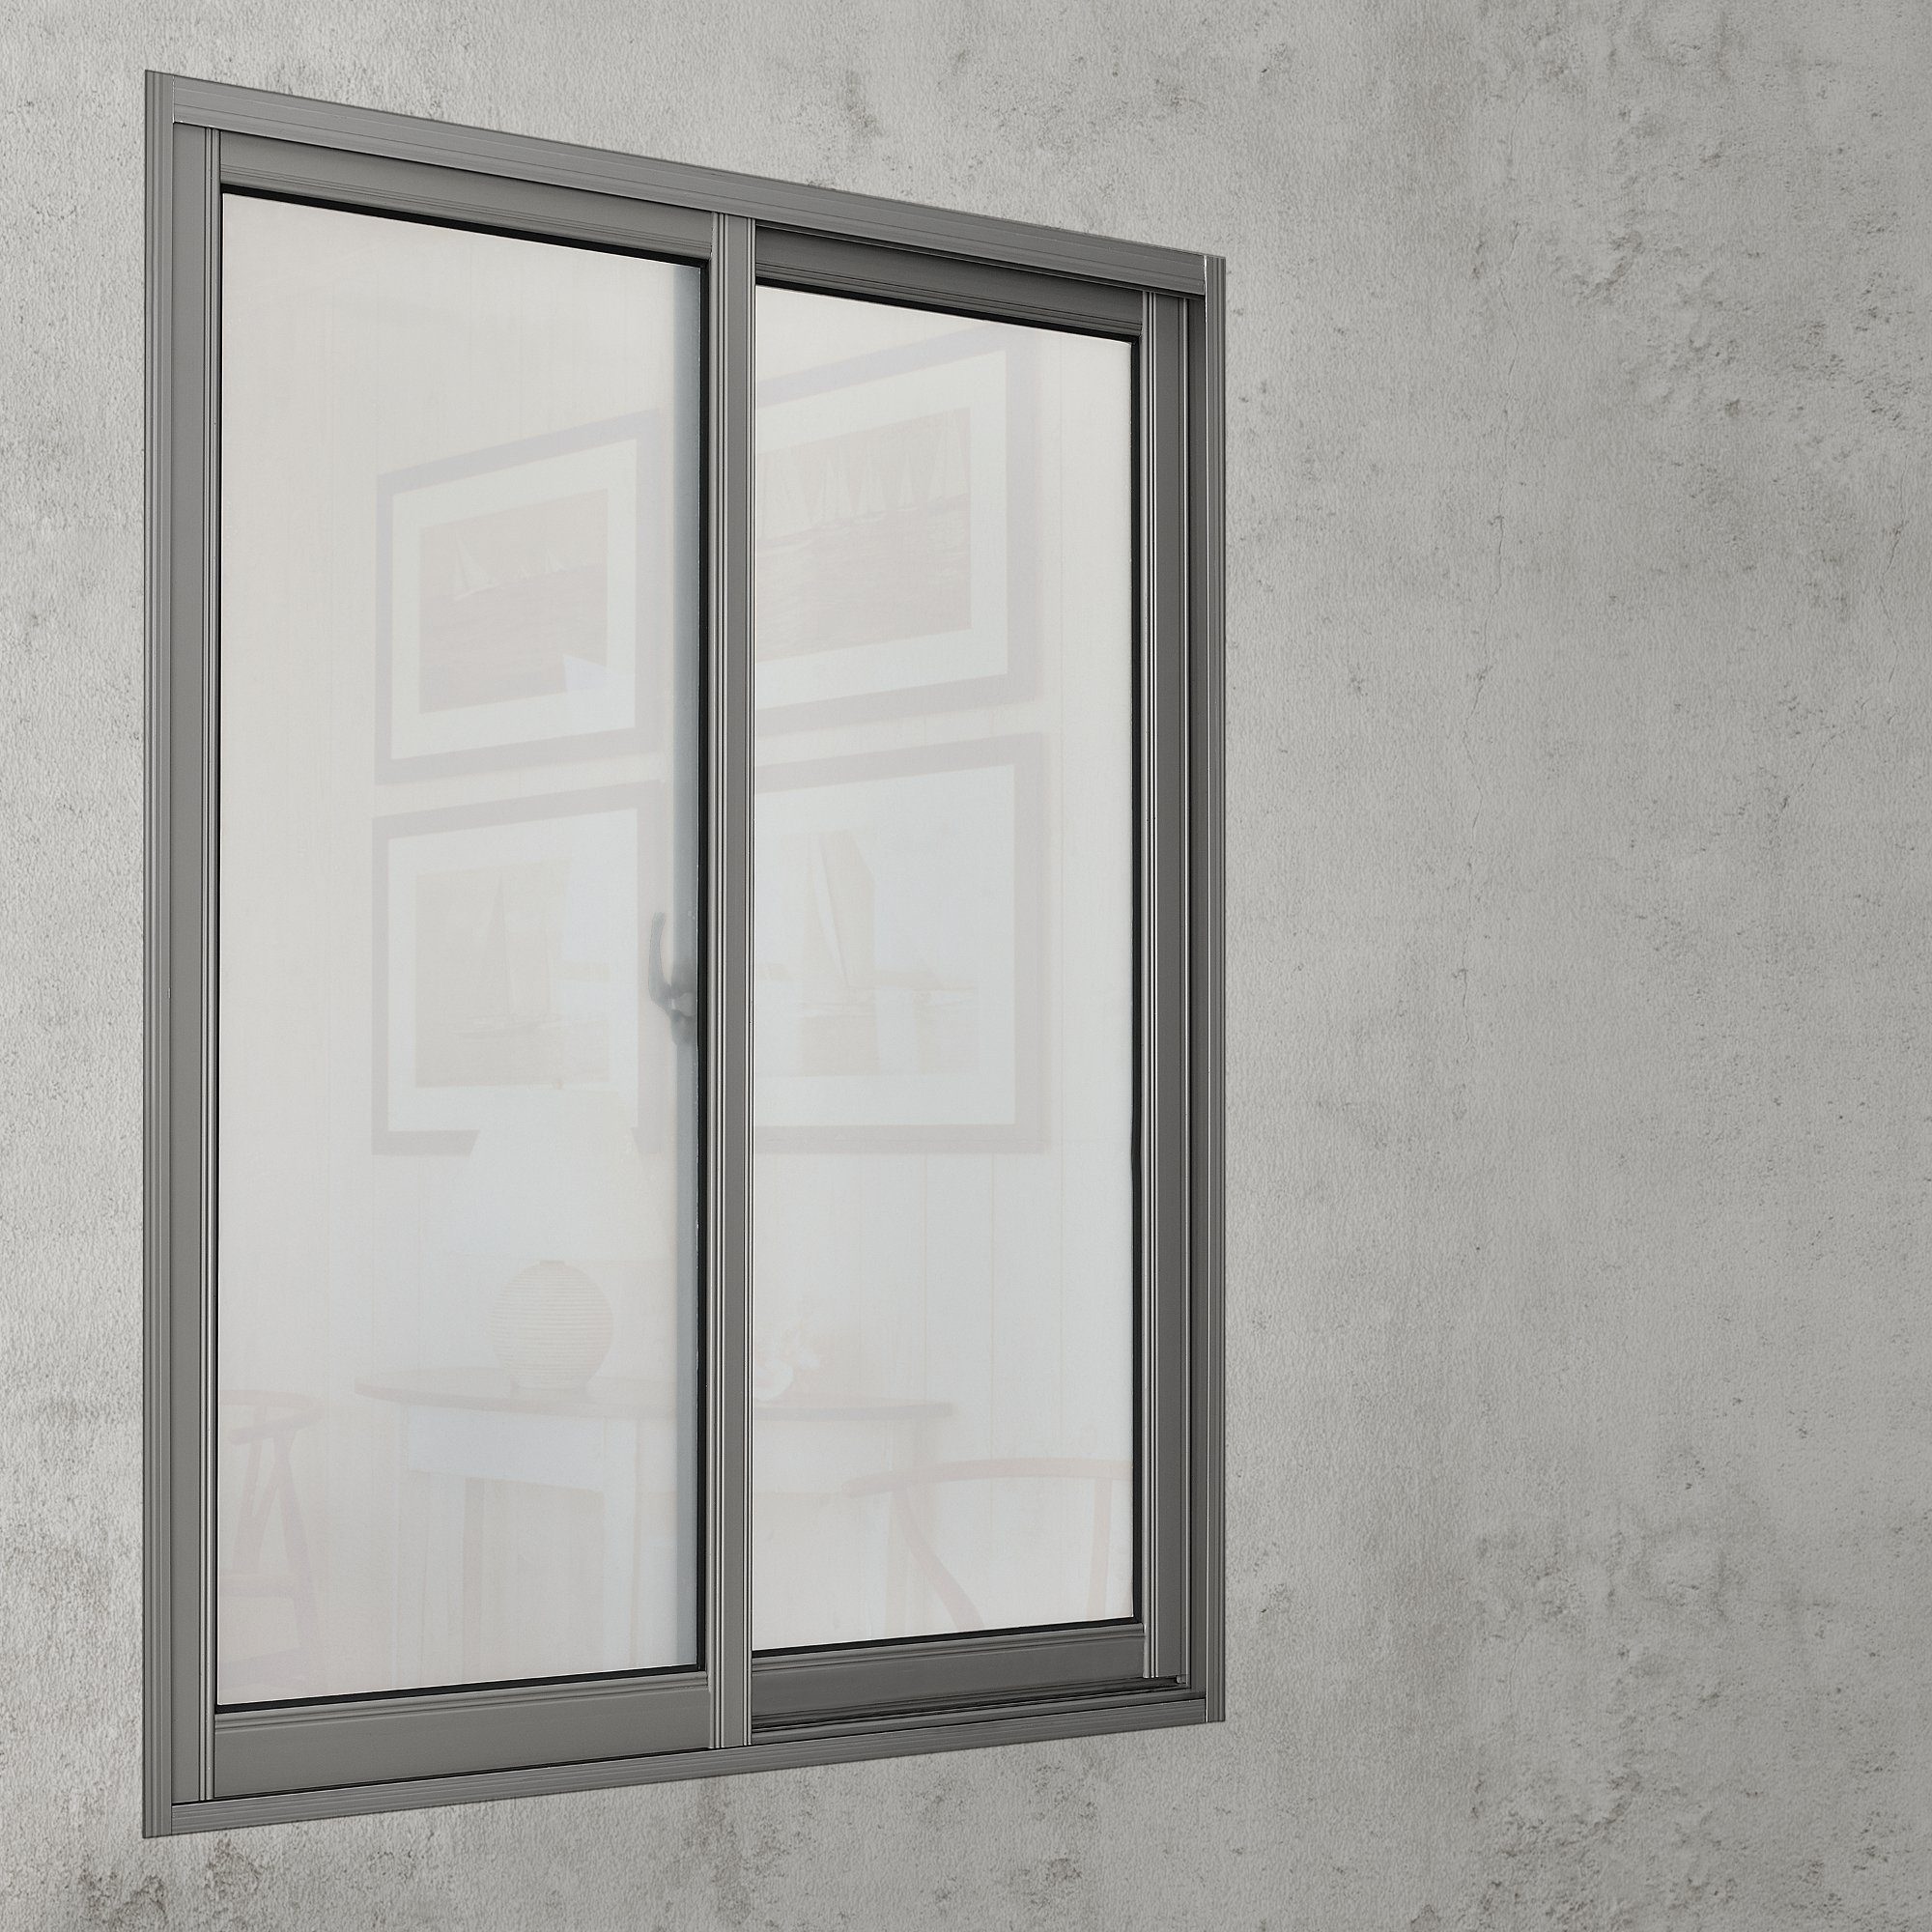 Sichtschutzfolie Eslöv selbstklebend Fensterfolie, 2m glatt, casa.pro, Frosted weiß halbtransp. 50cm x